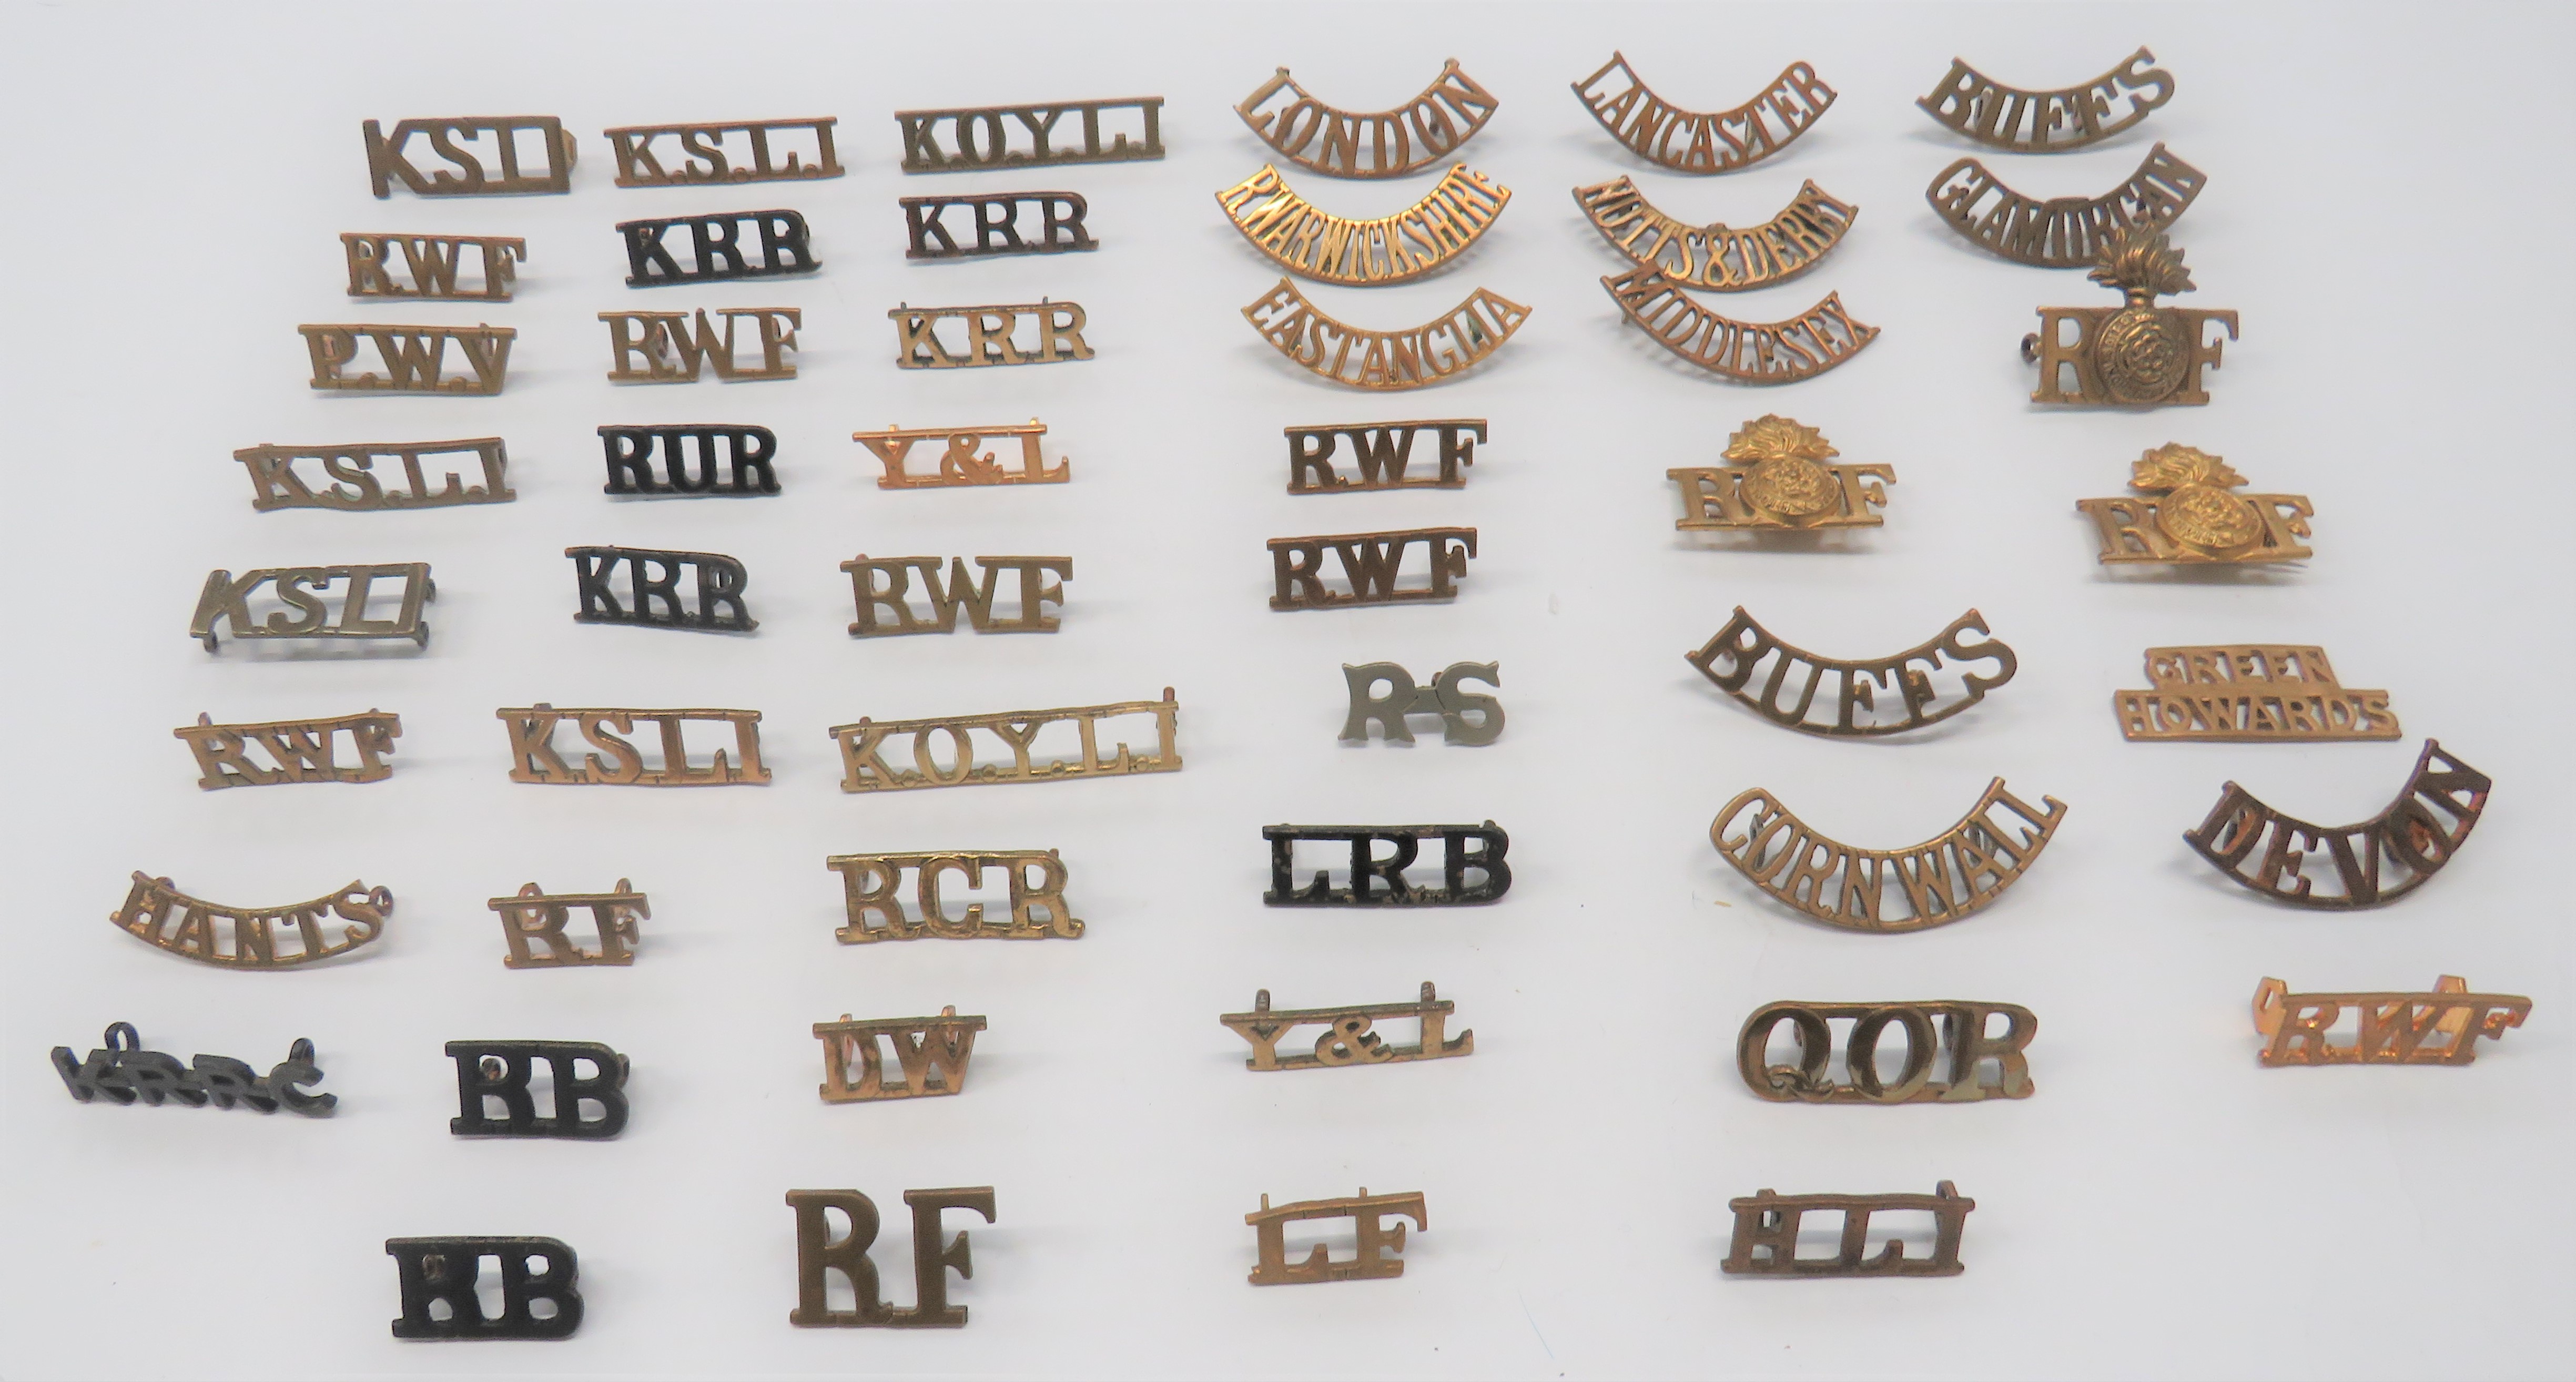 50 x Infantry Brass Shoulder Titles including KRR ... RWF ... Notts & Derby ... KSLI ... KOYLI ...